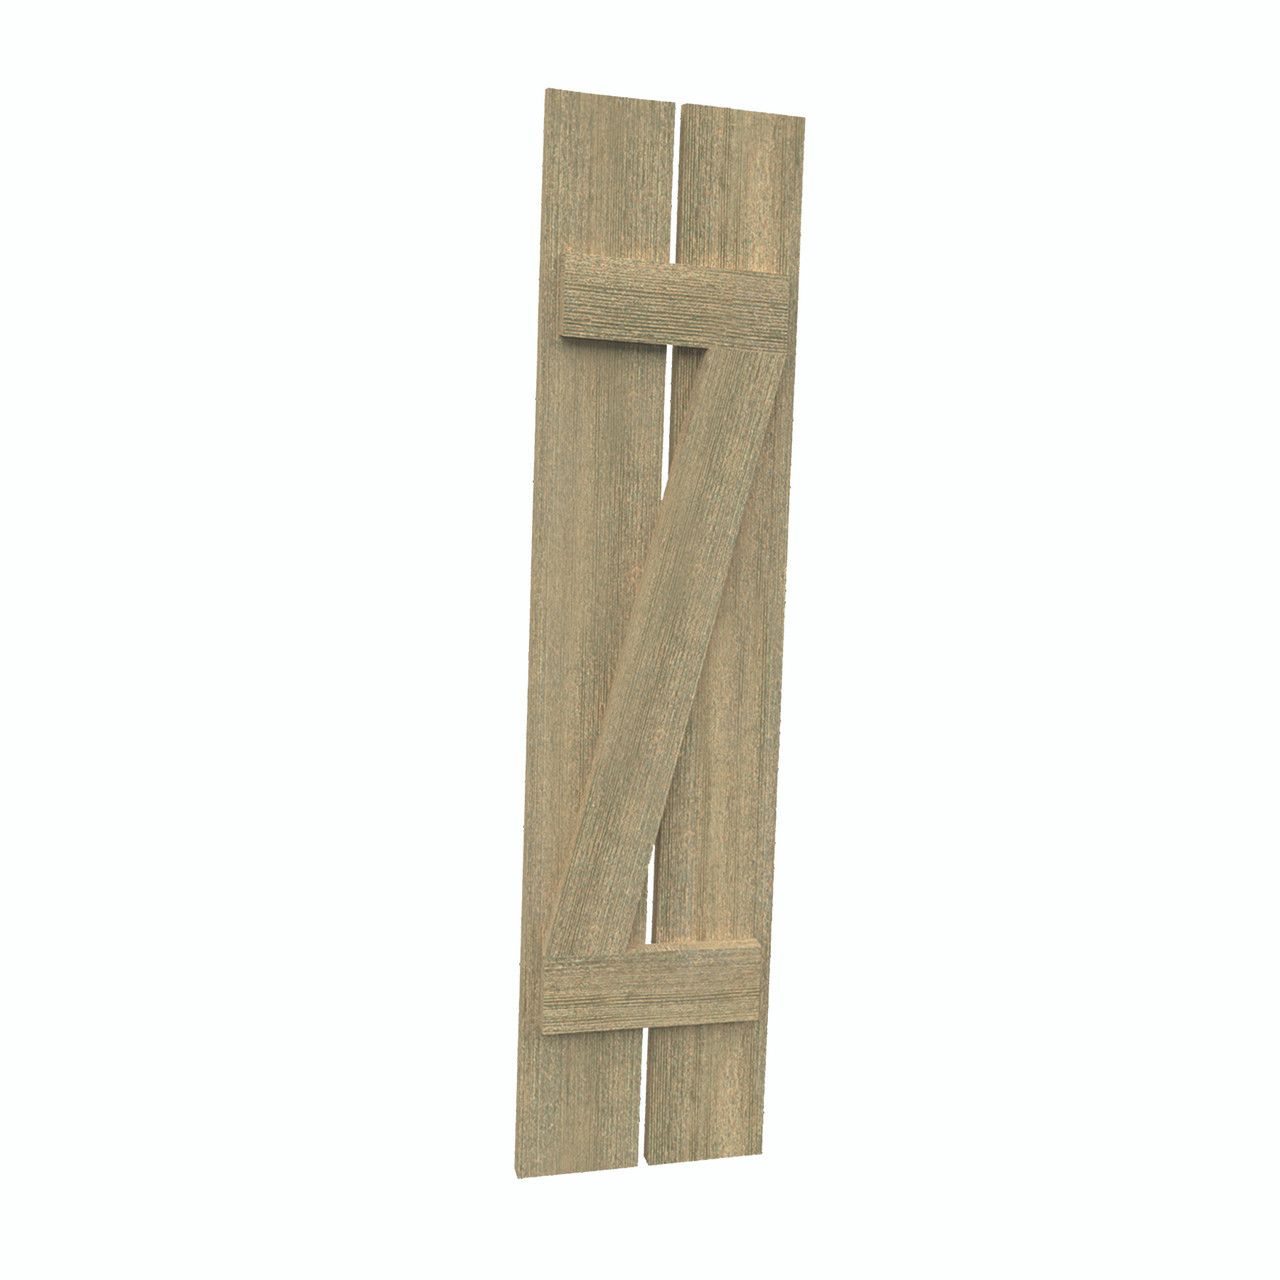 12 inch by 39 inch Plank Shutter with 2-Plank, Z-Batten